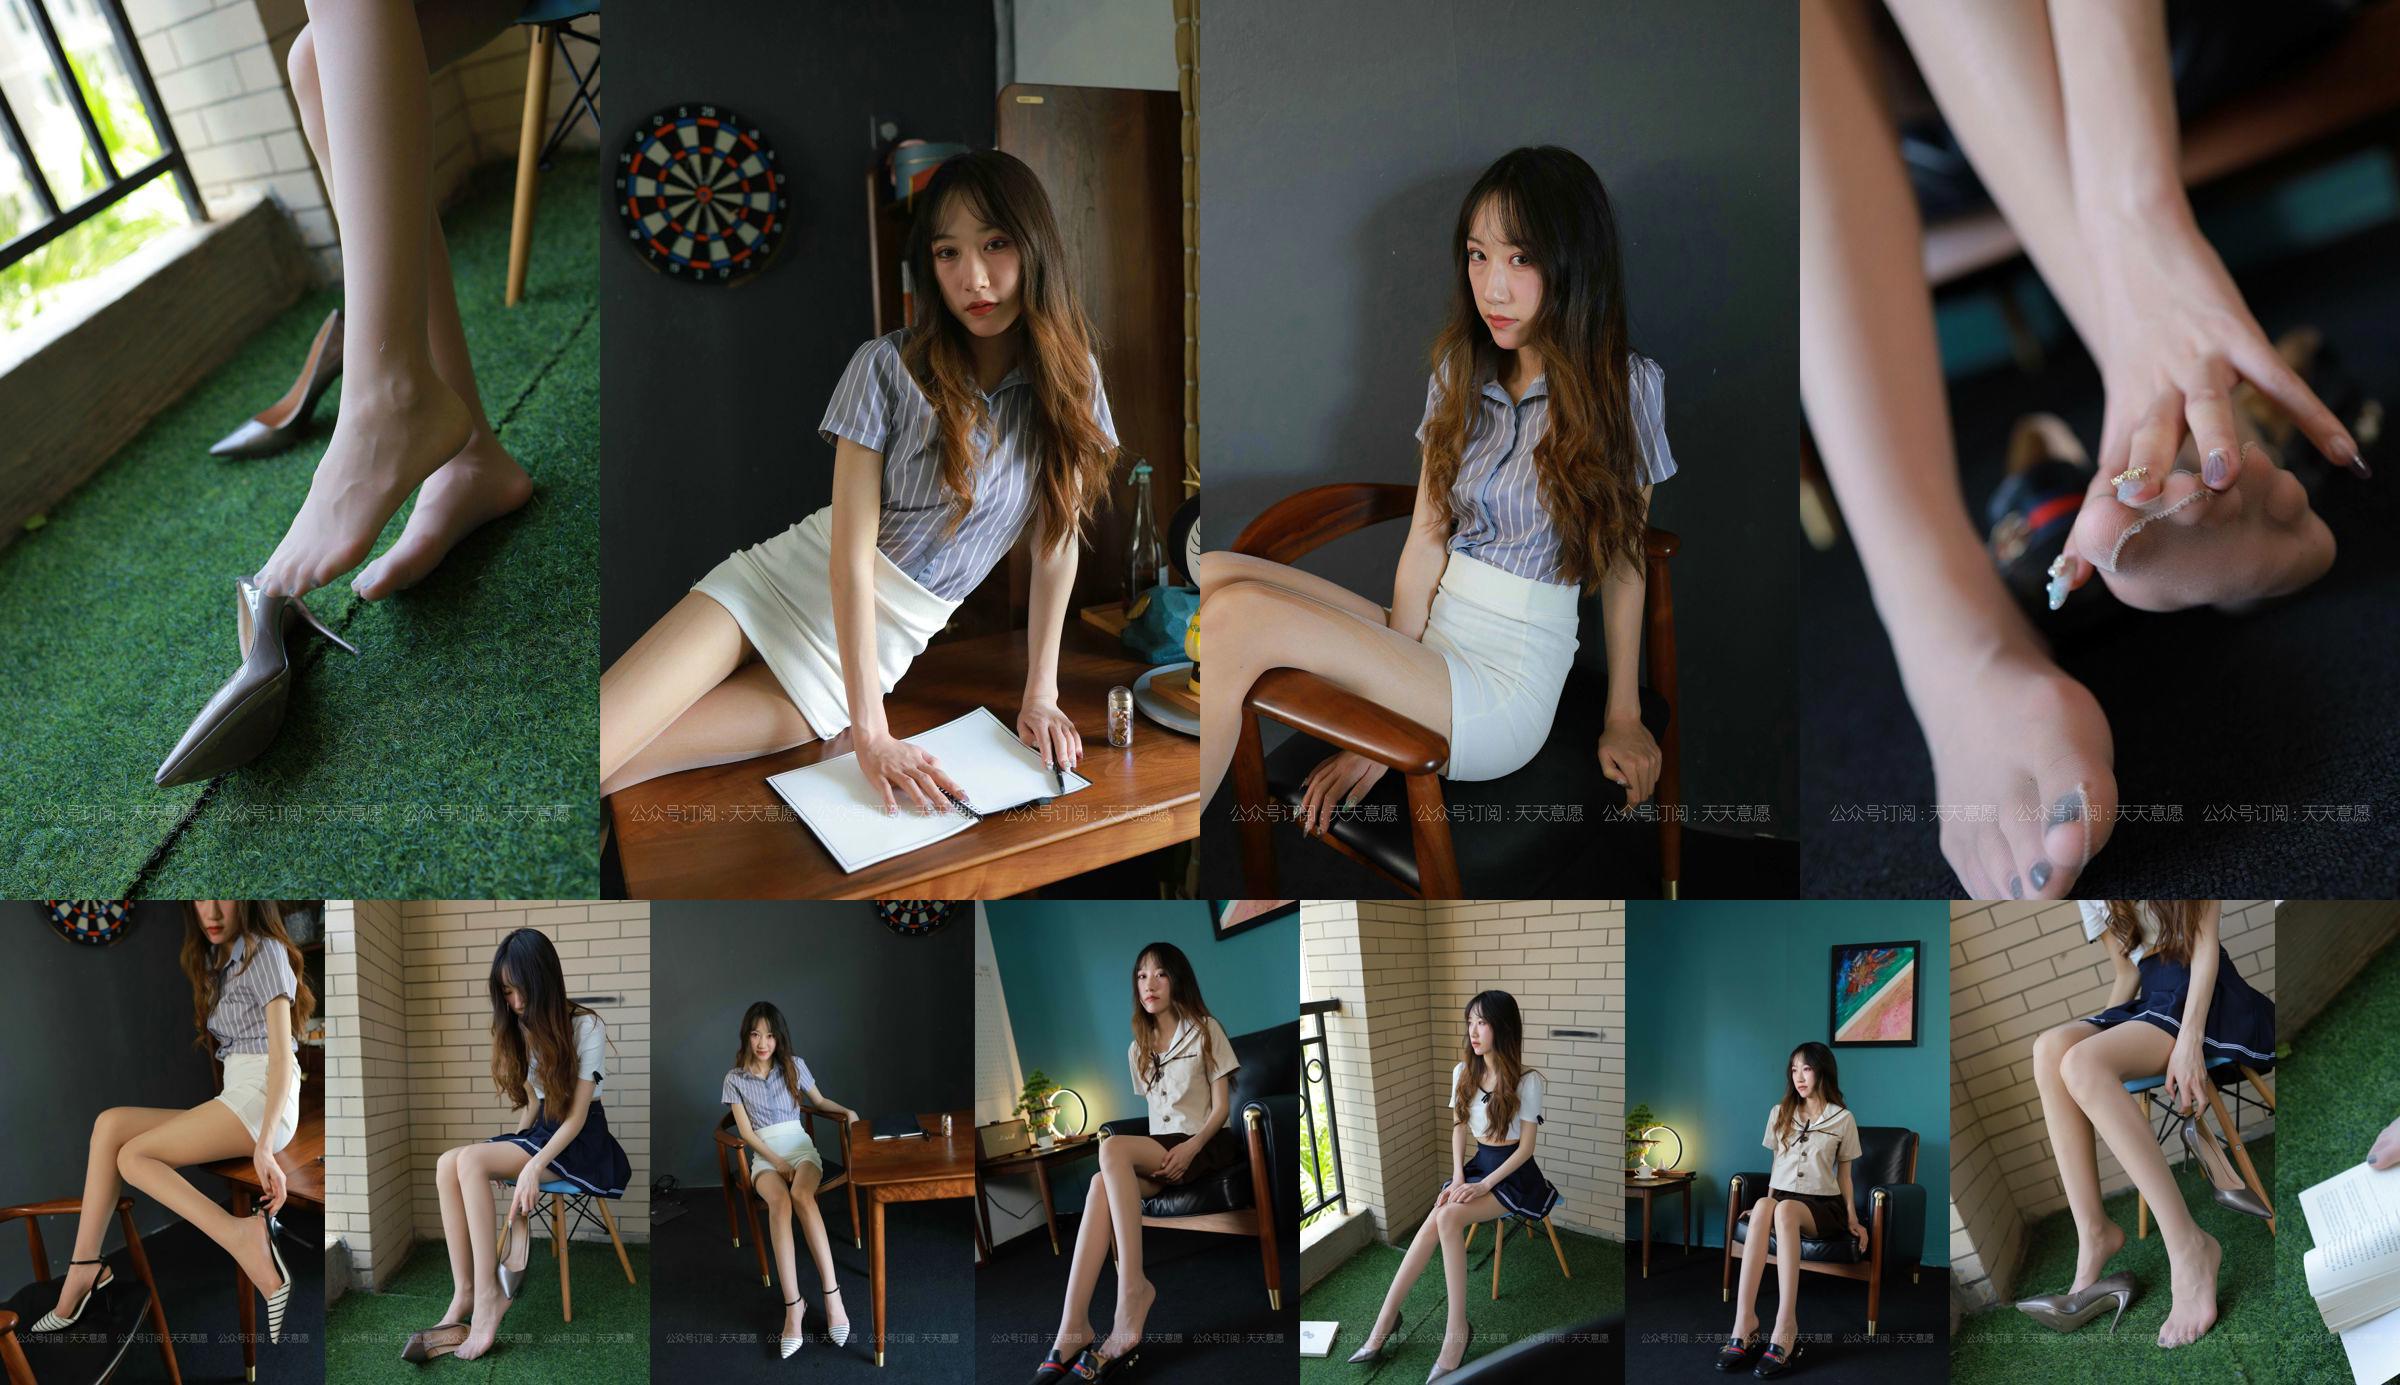 [IESS 奇思趣向] Модель: Юи "Девушка с длинными ногами" No.4a3e18 Страница 5